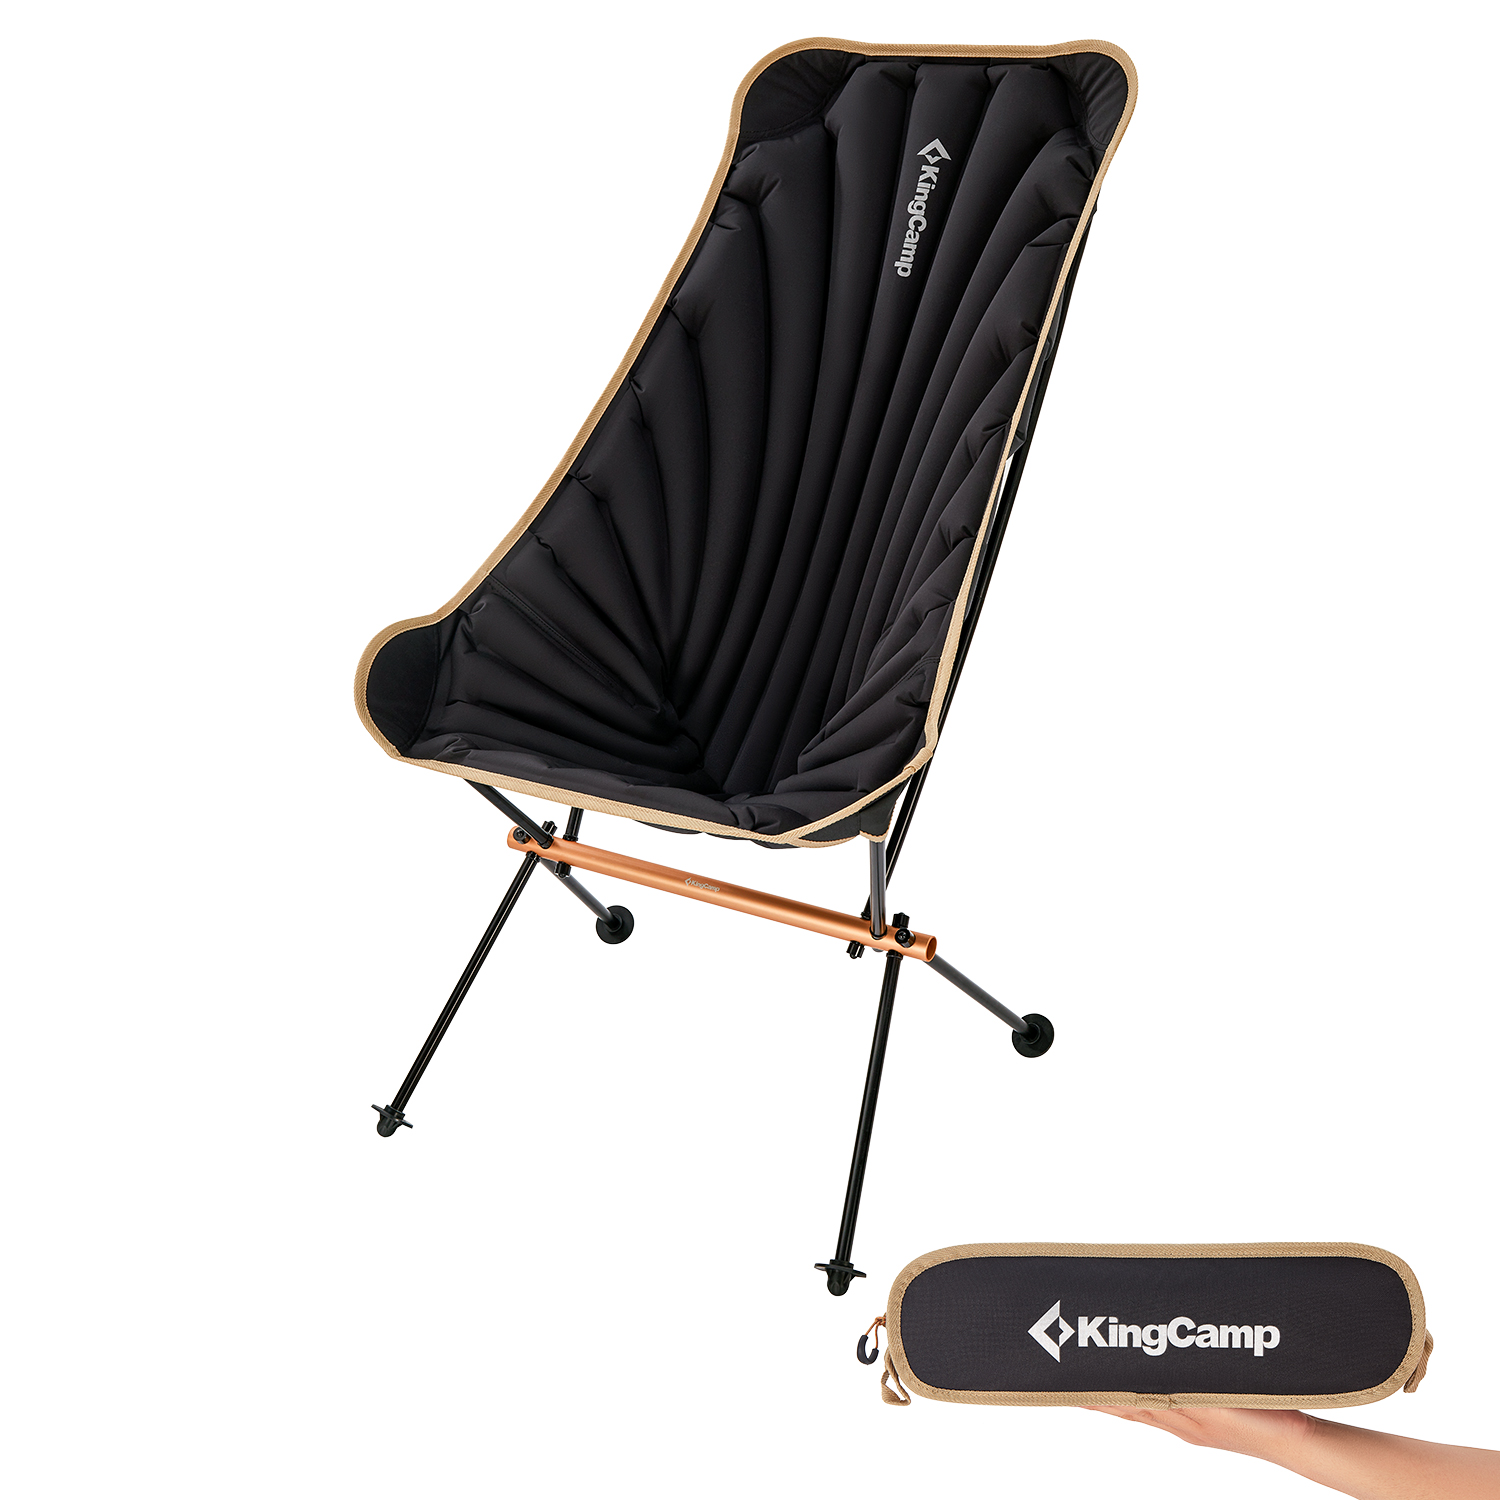 【楽天市場】【一年保証】KingCamp キャンプ椅子 折りたたみ 空気入れ式チェア 耐荷重 100kg アウトドアチェア 超軽量 コンパクト